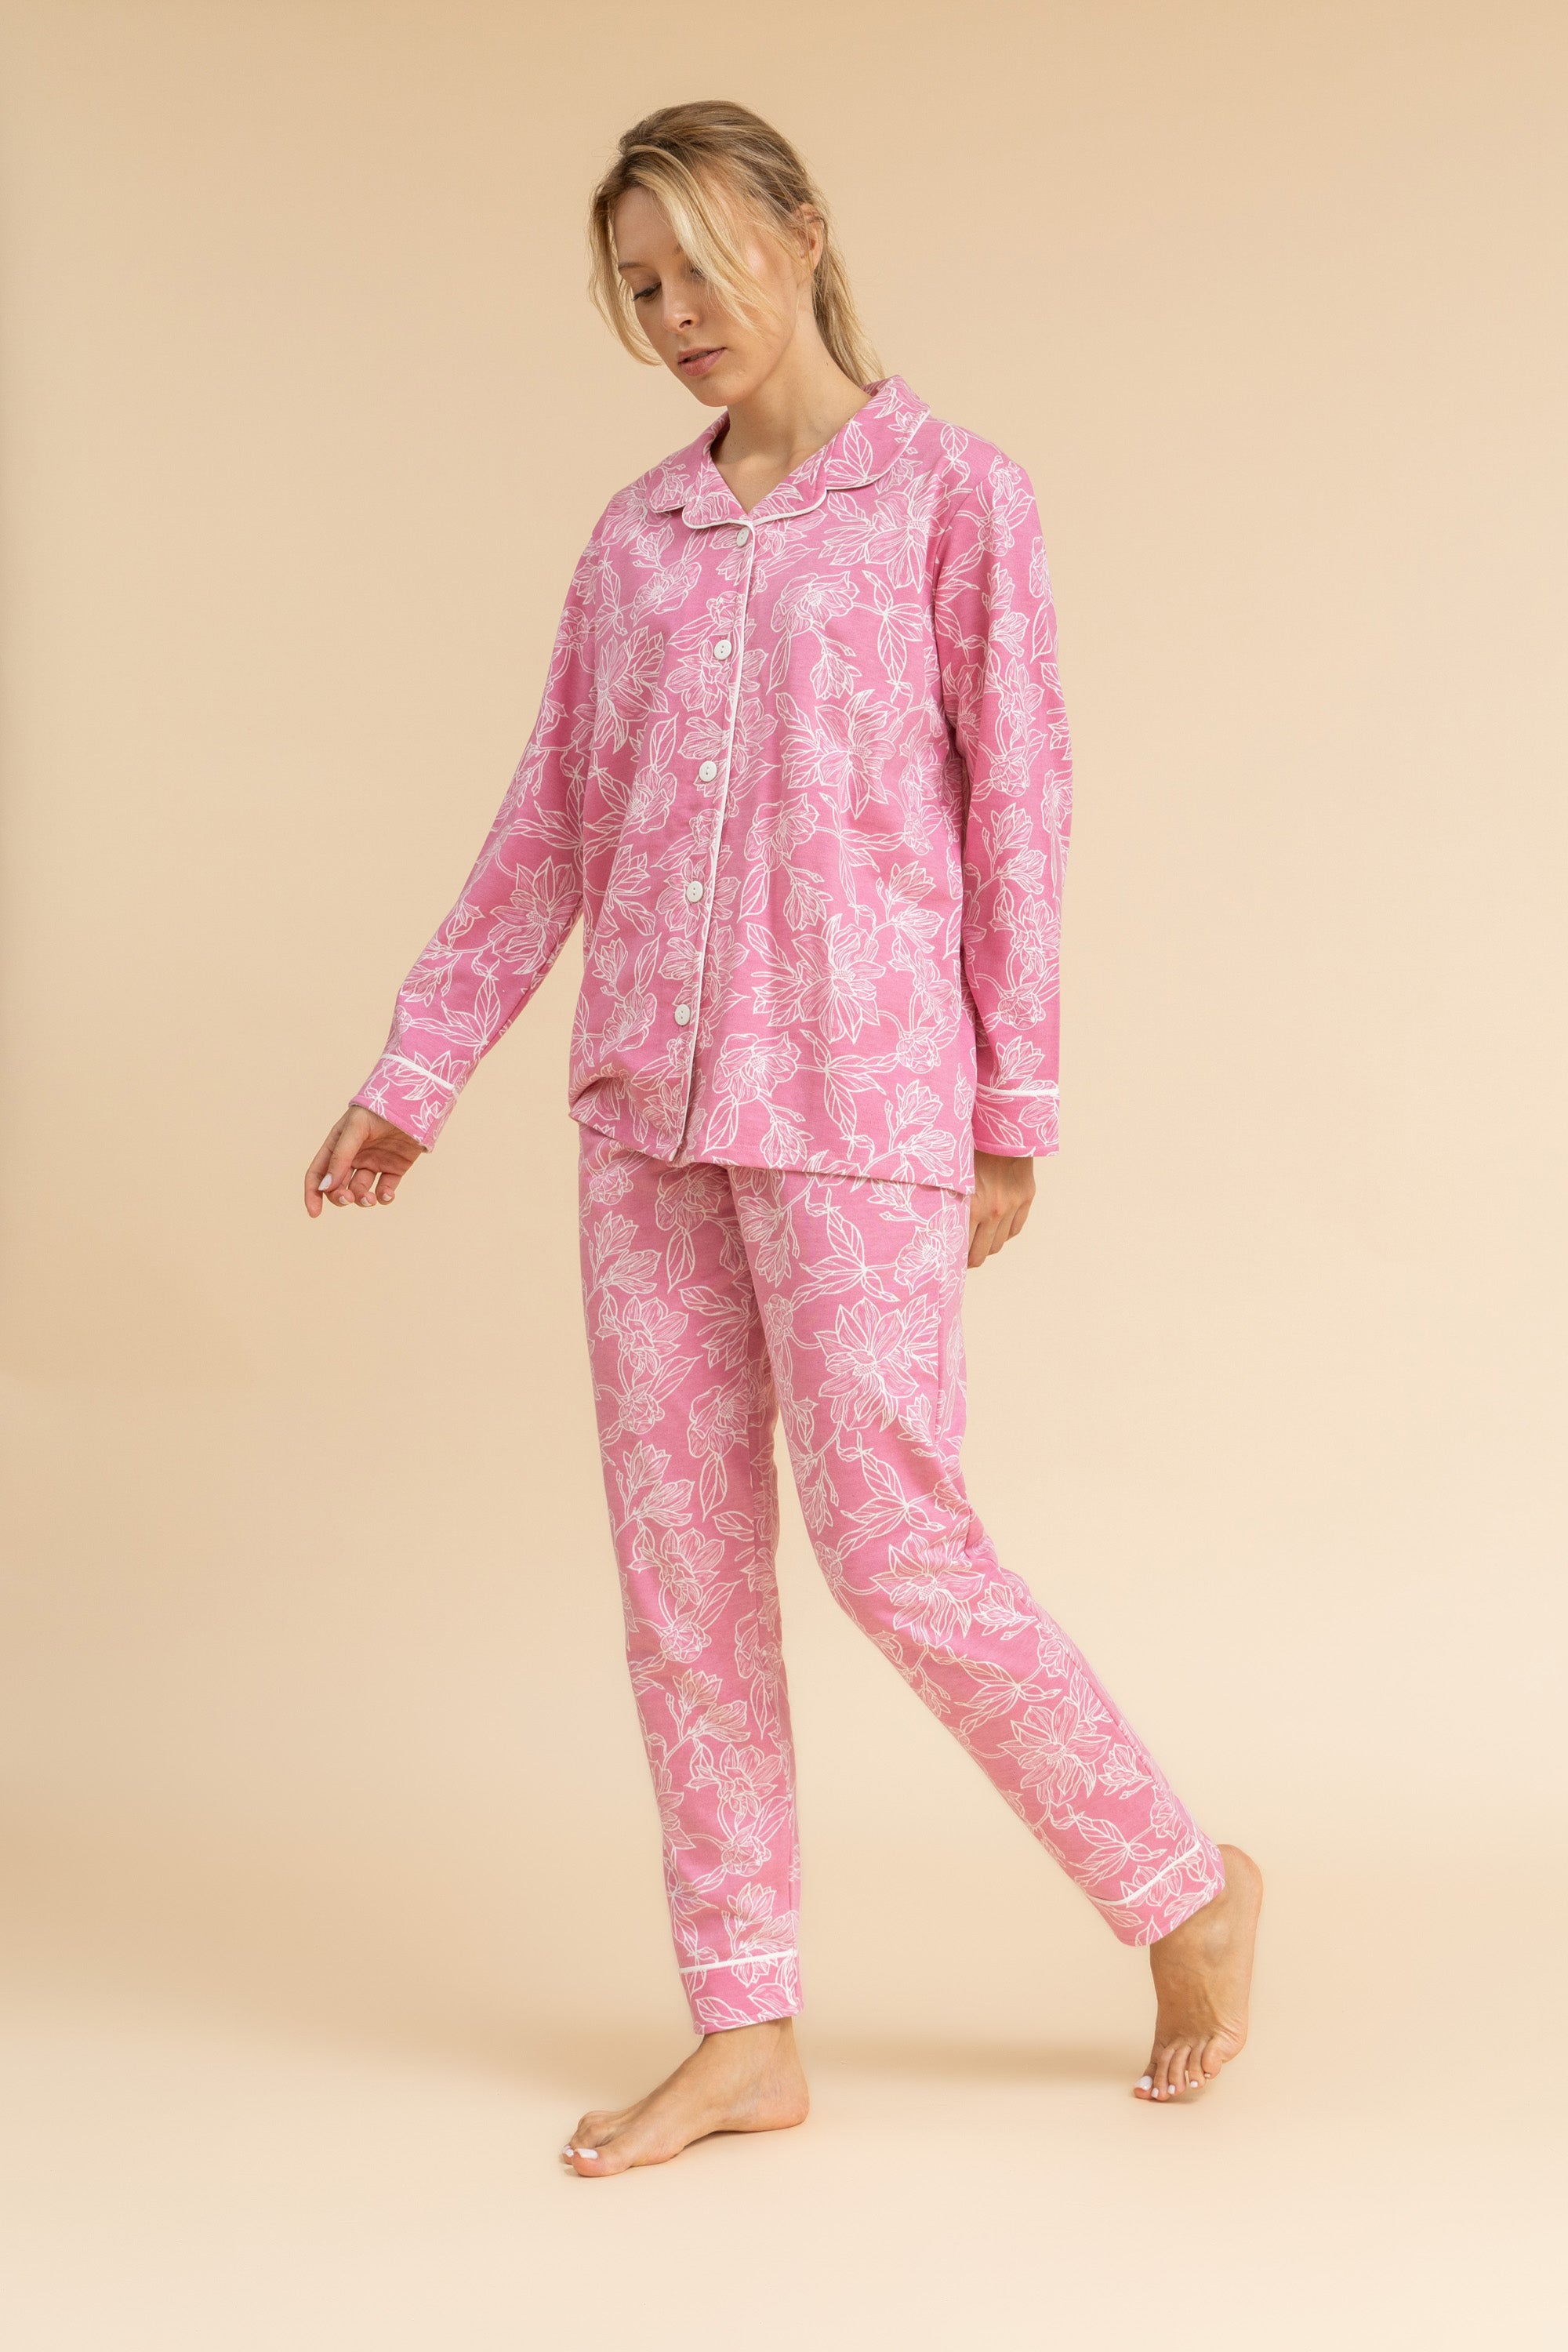 Floral print 100% cotton Pajama